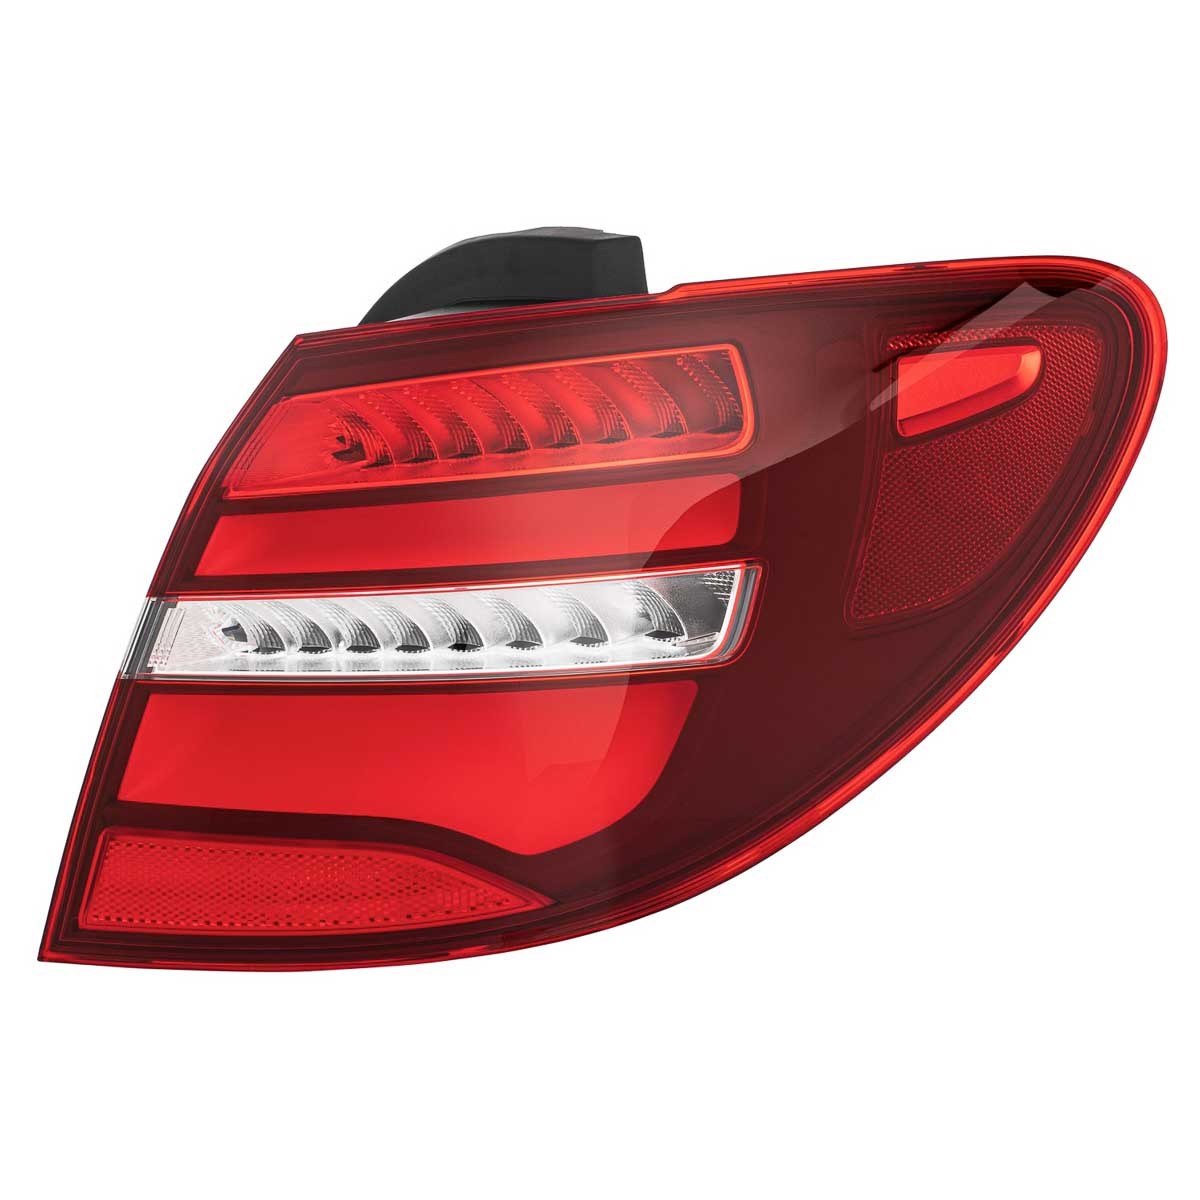 Auto lichter für Benz W205 C Klasse 2014-2017 LED Auto Rücklicht